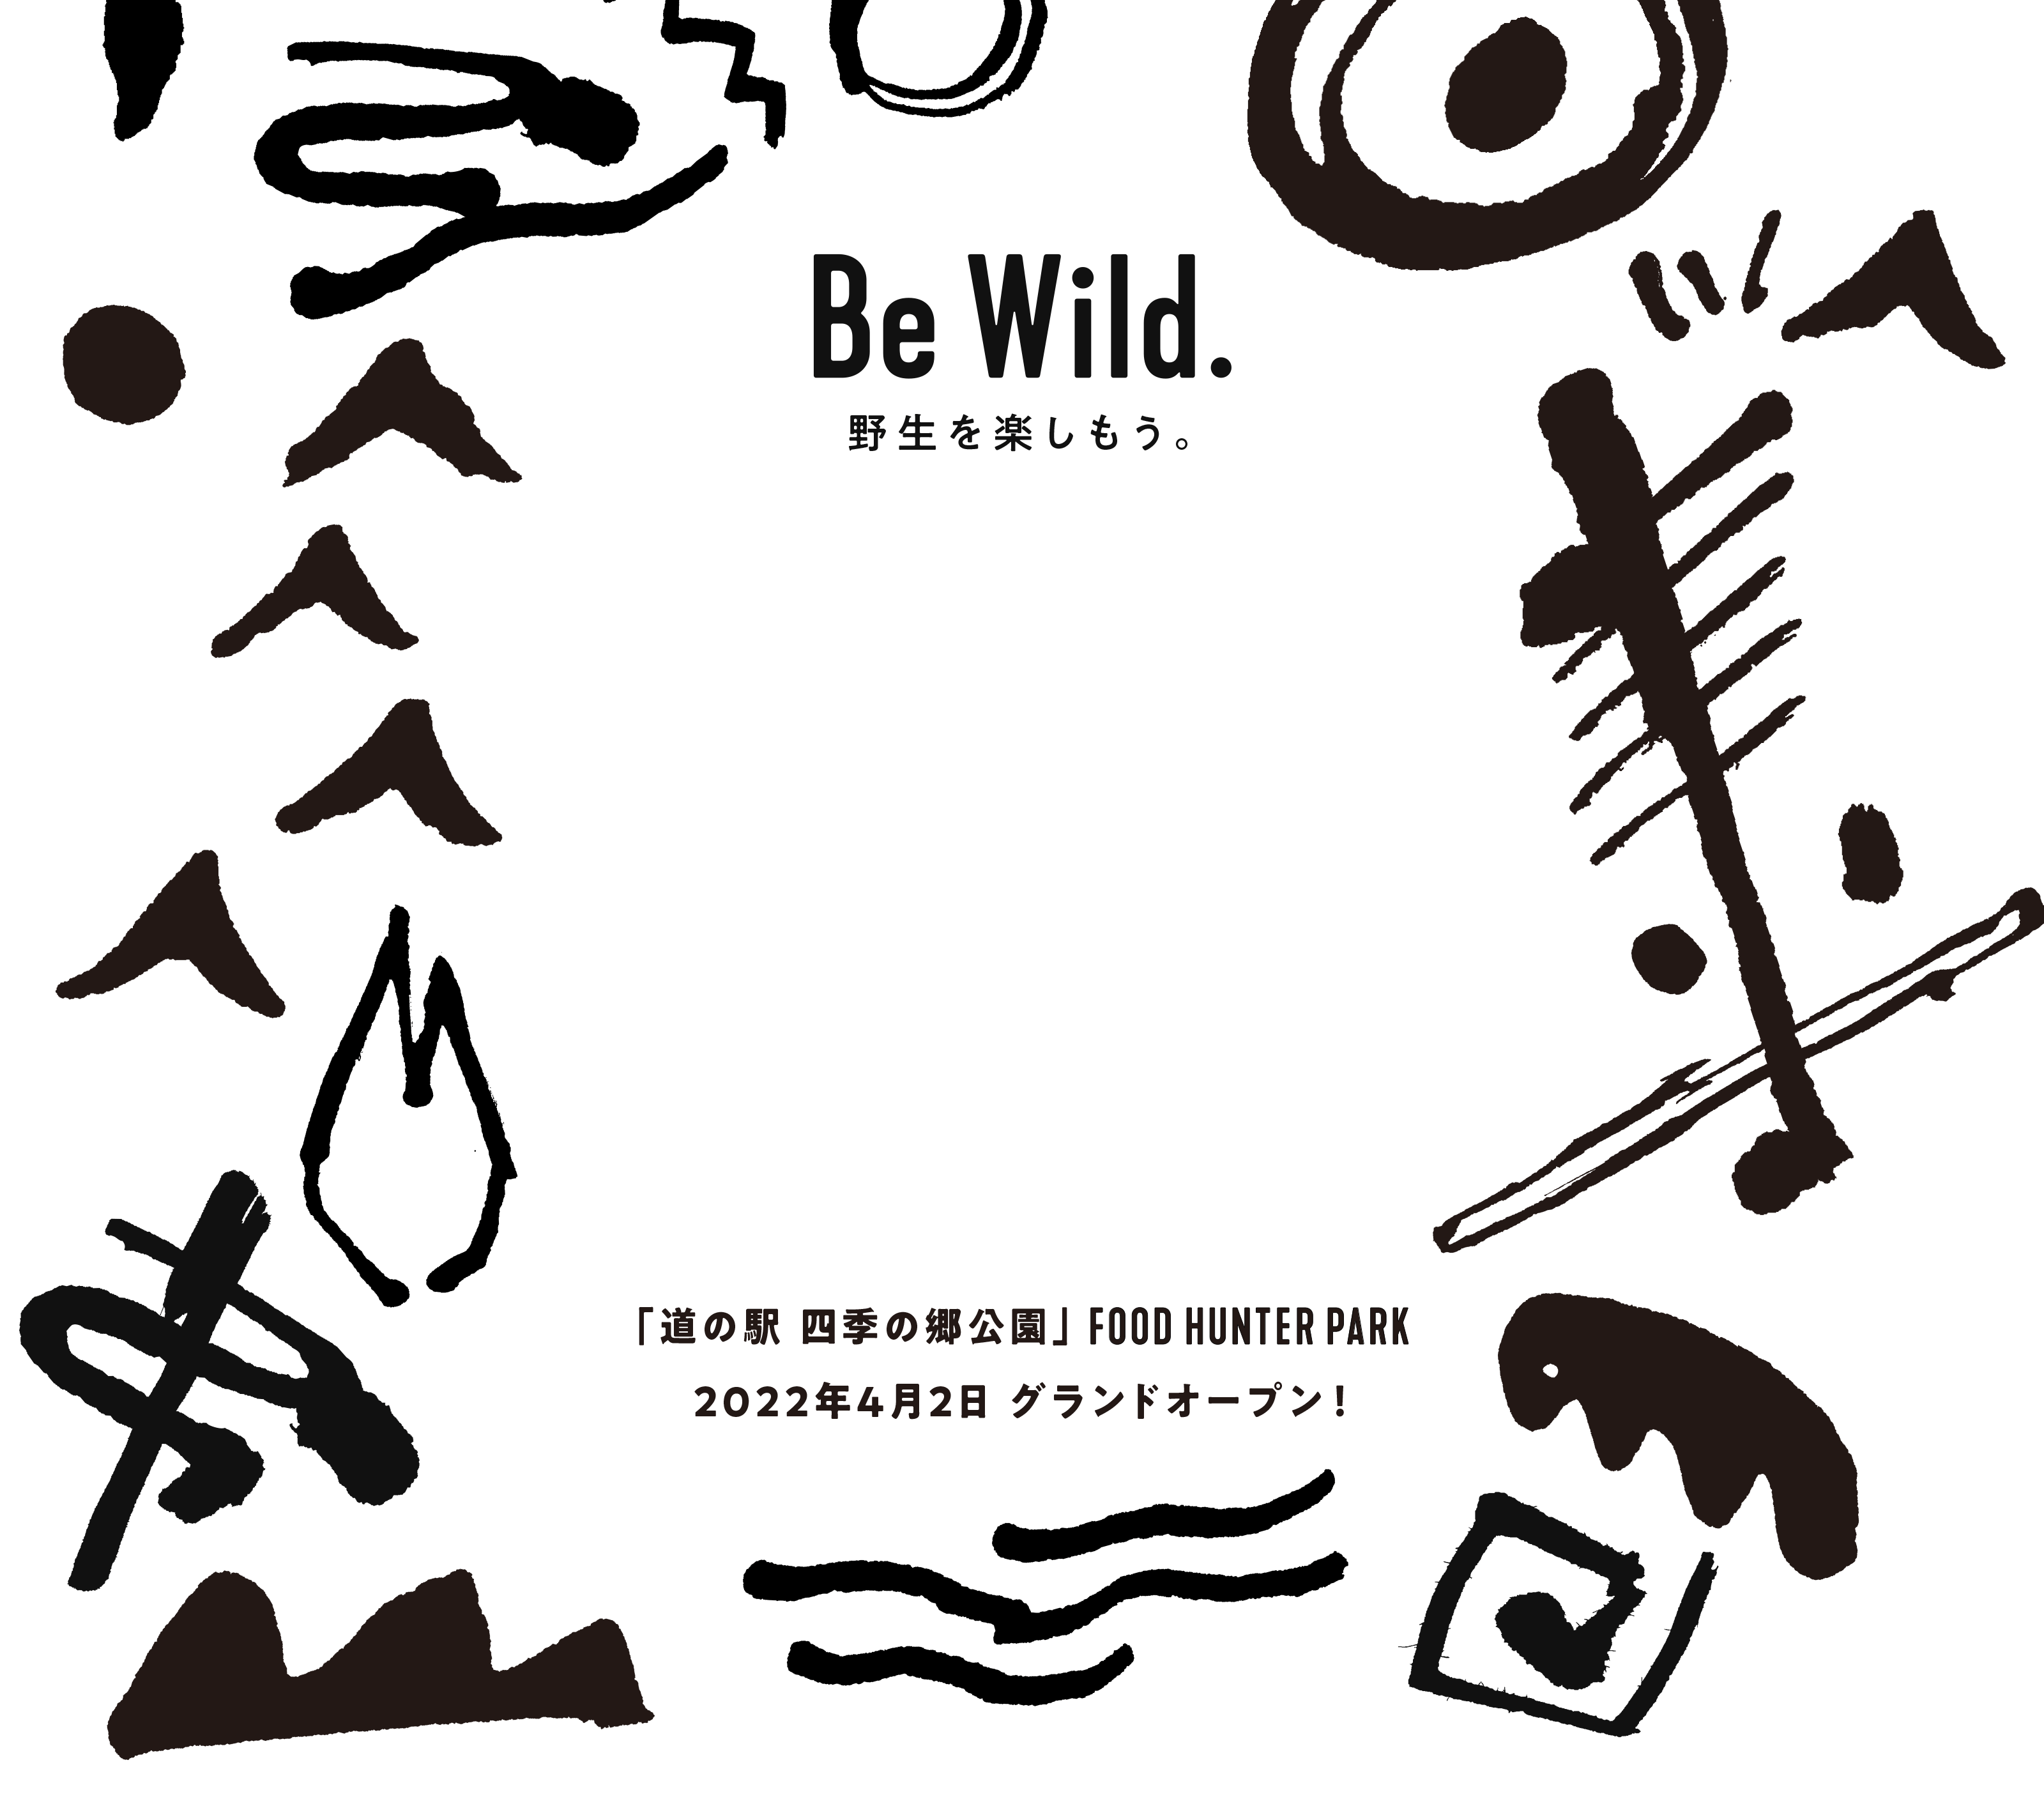 Be Wild. 野生を楽しもう。「道の駅 四季の郷公園」 FOOD HUNTER PARK フードハンターパーク